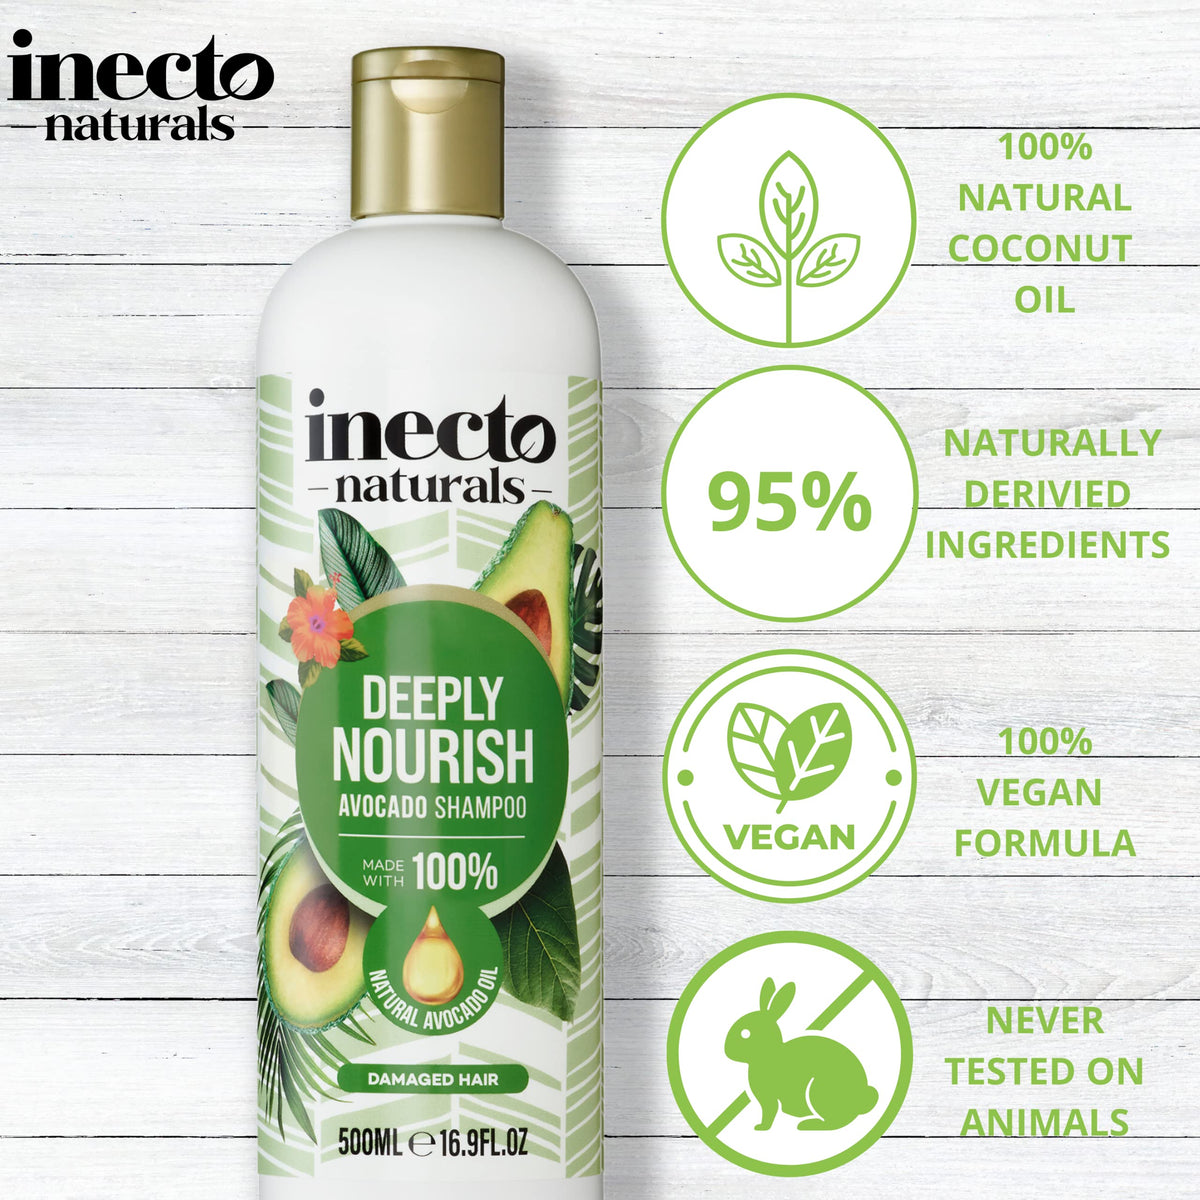 Inecto Natural Avocado Nourishing Avocado Shampoo - 500ml